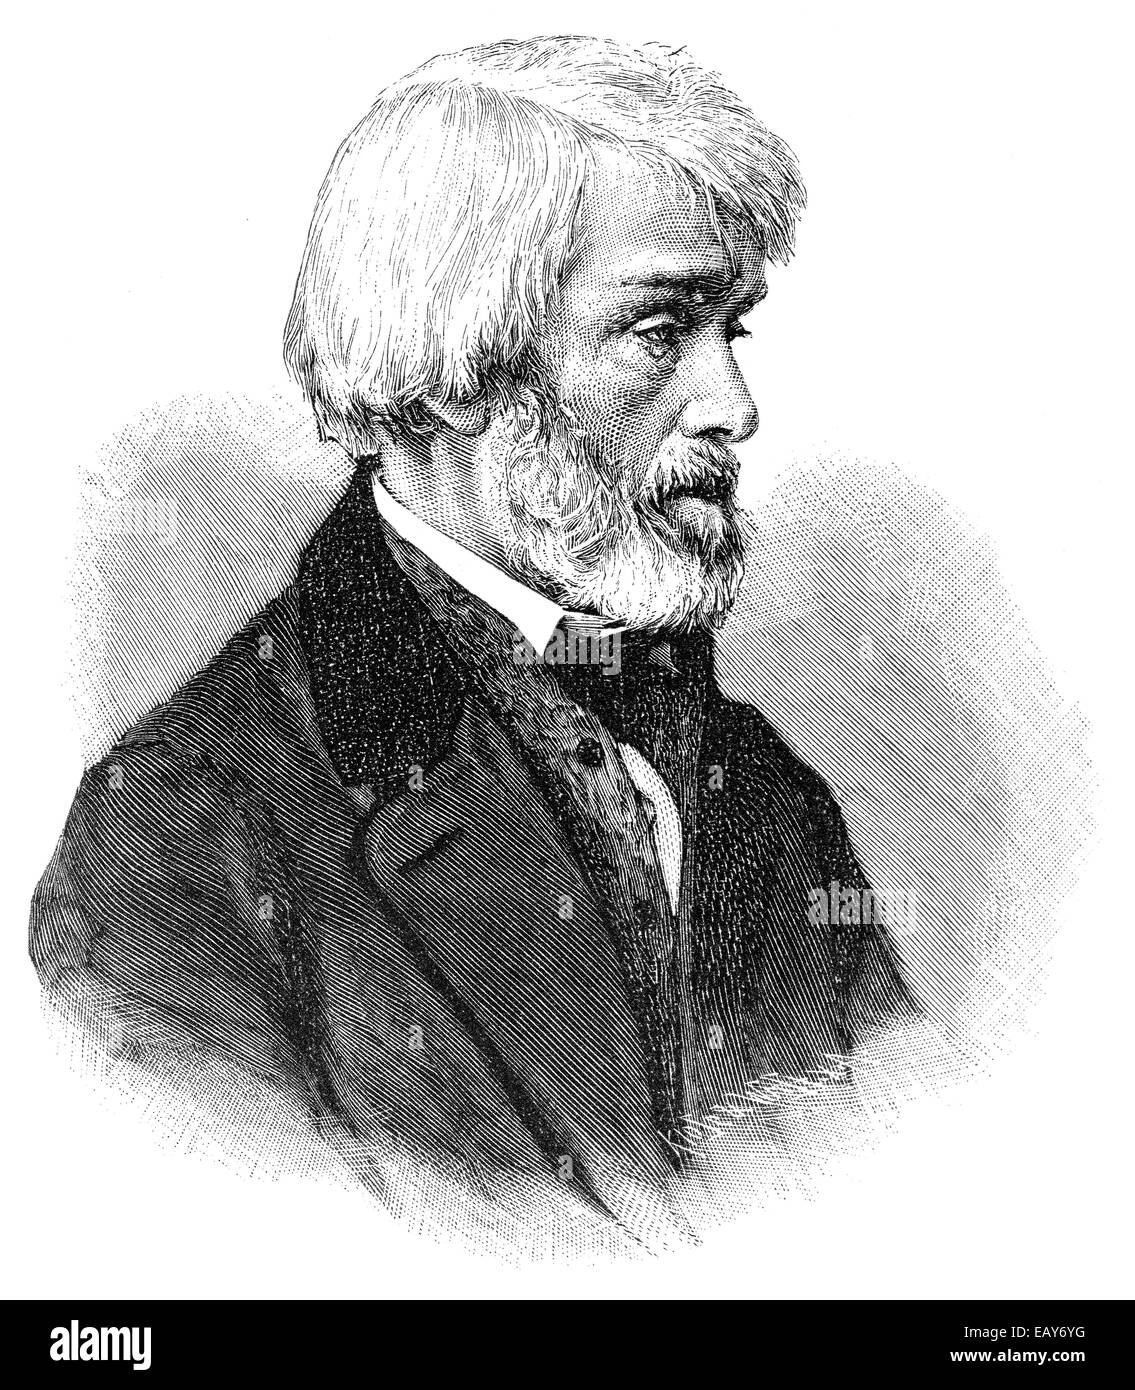 Thomas Carlyle, 1795 - 1881, a Scottish essayist and historian, Historische Zeichnung aus dem 19. Jahrhundert, Portrait von Thom Stock Photo